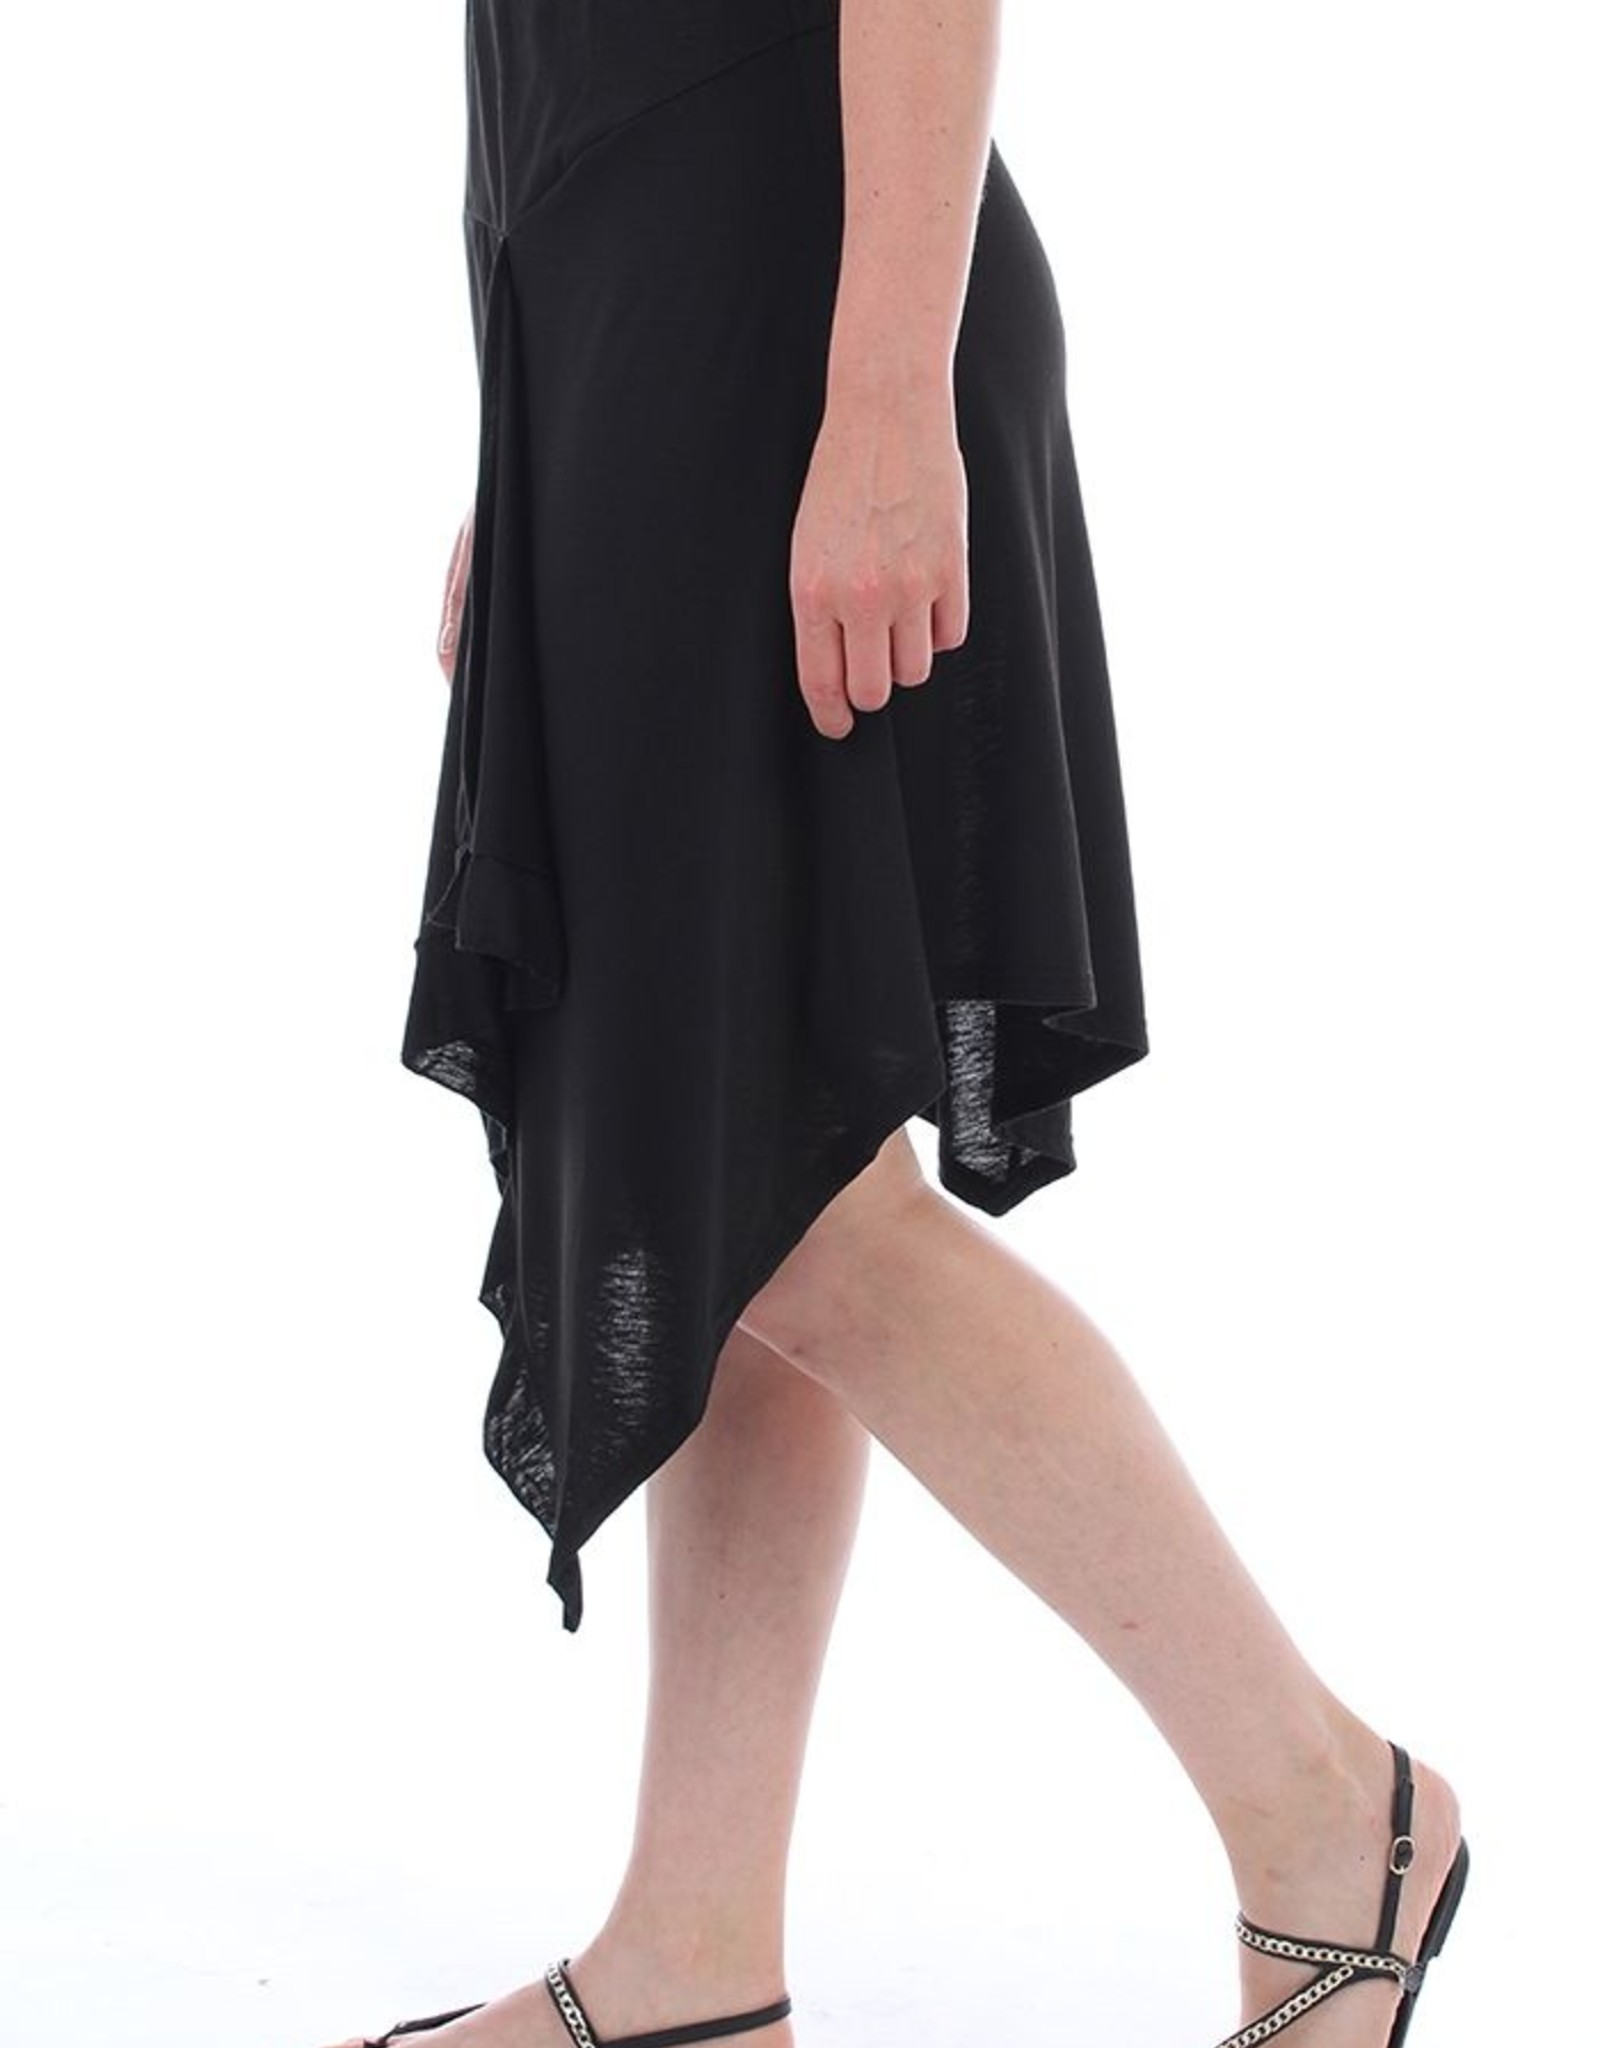 Fresh FX Fresh FX Black Jersey skirt S113B22015C